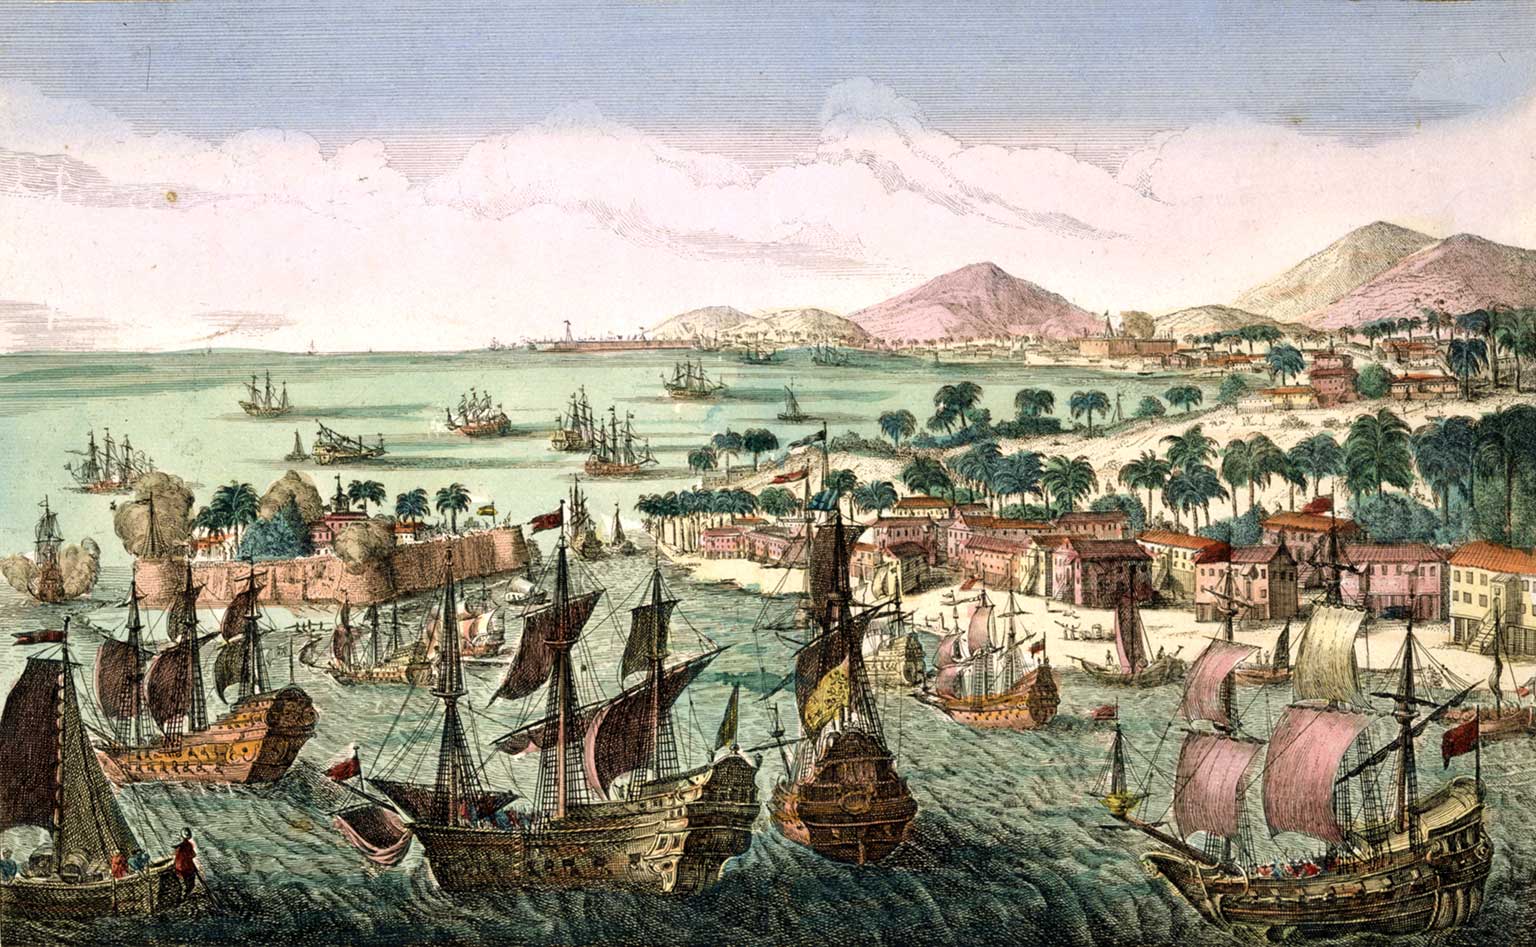 The British fleet captures the island of St. Eustatius in 1781